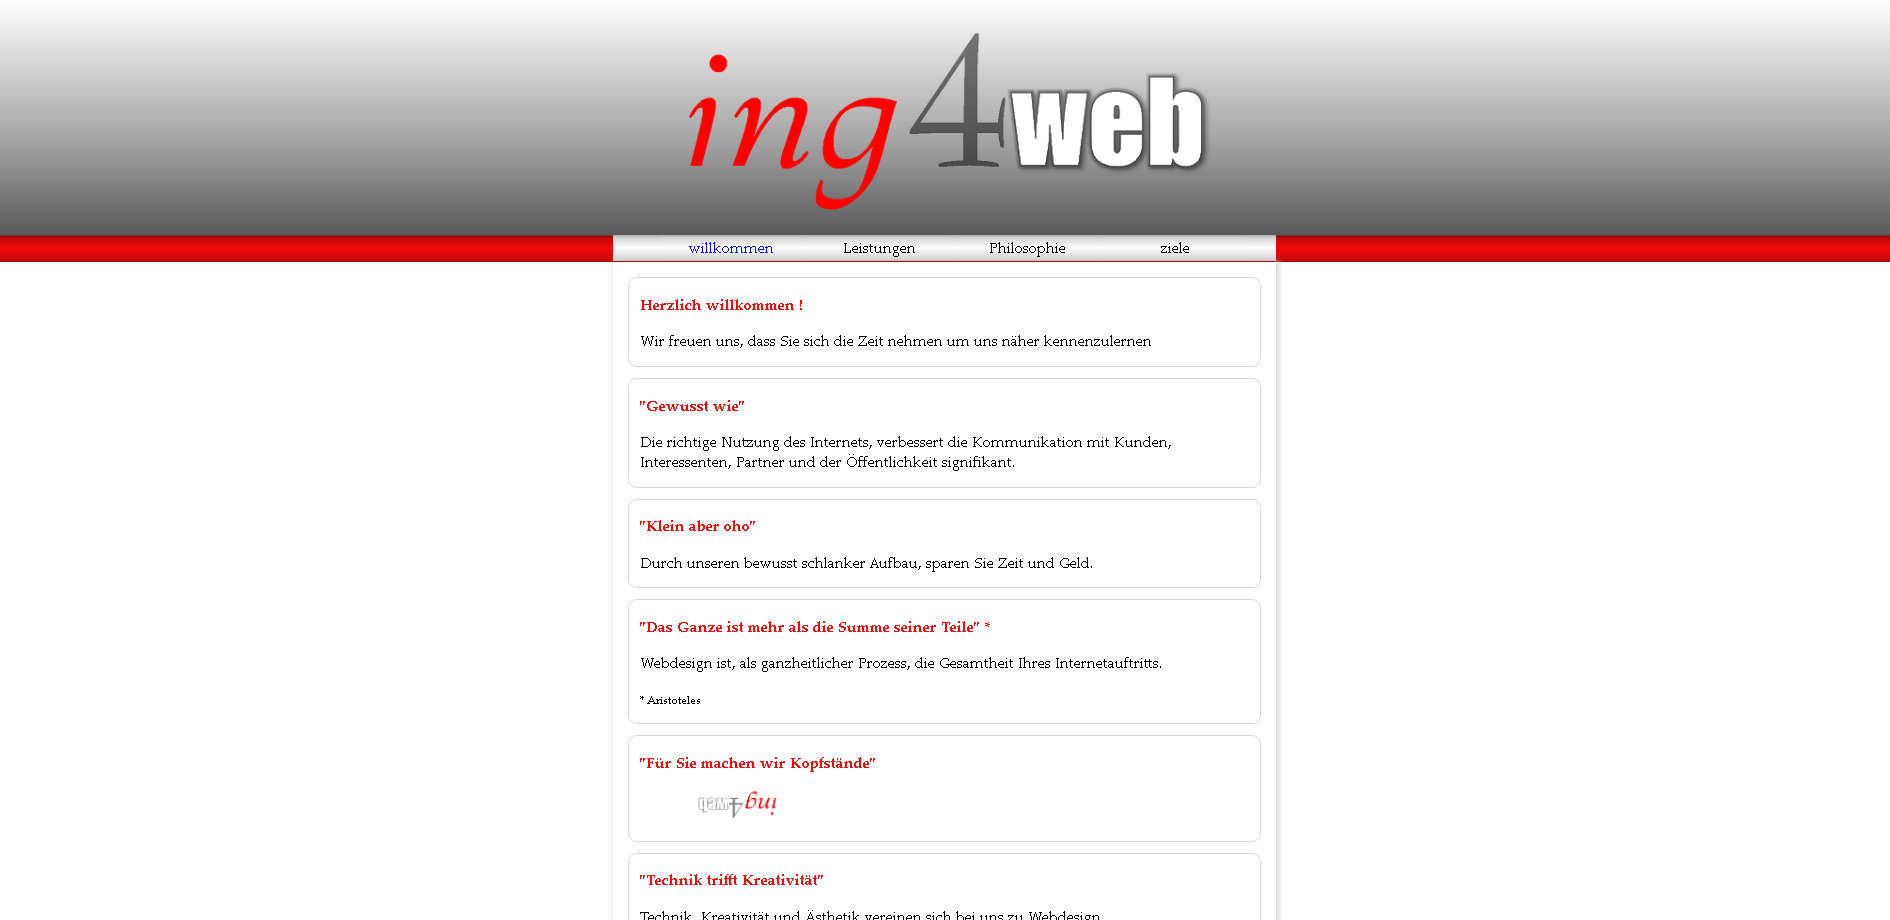 ing4web 2012